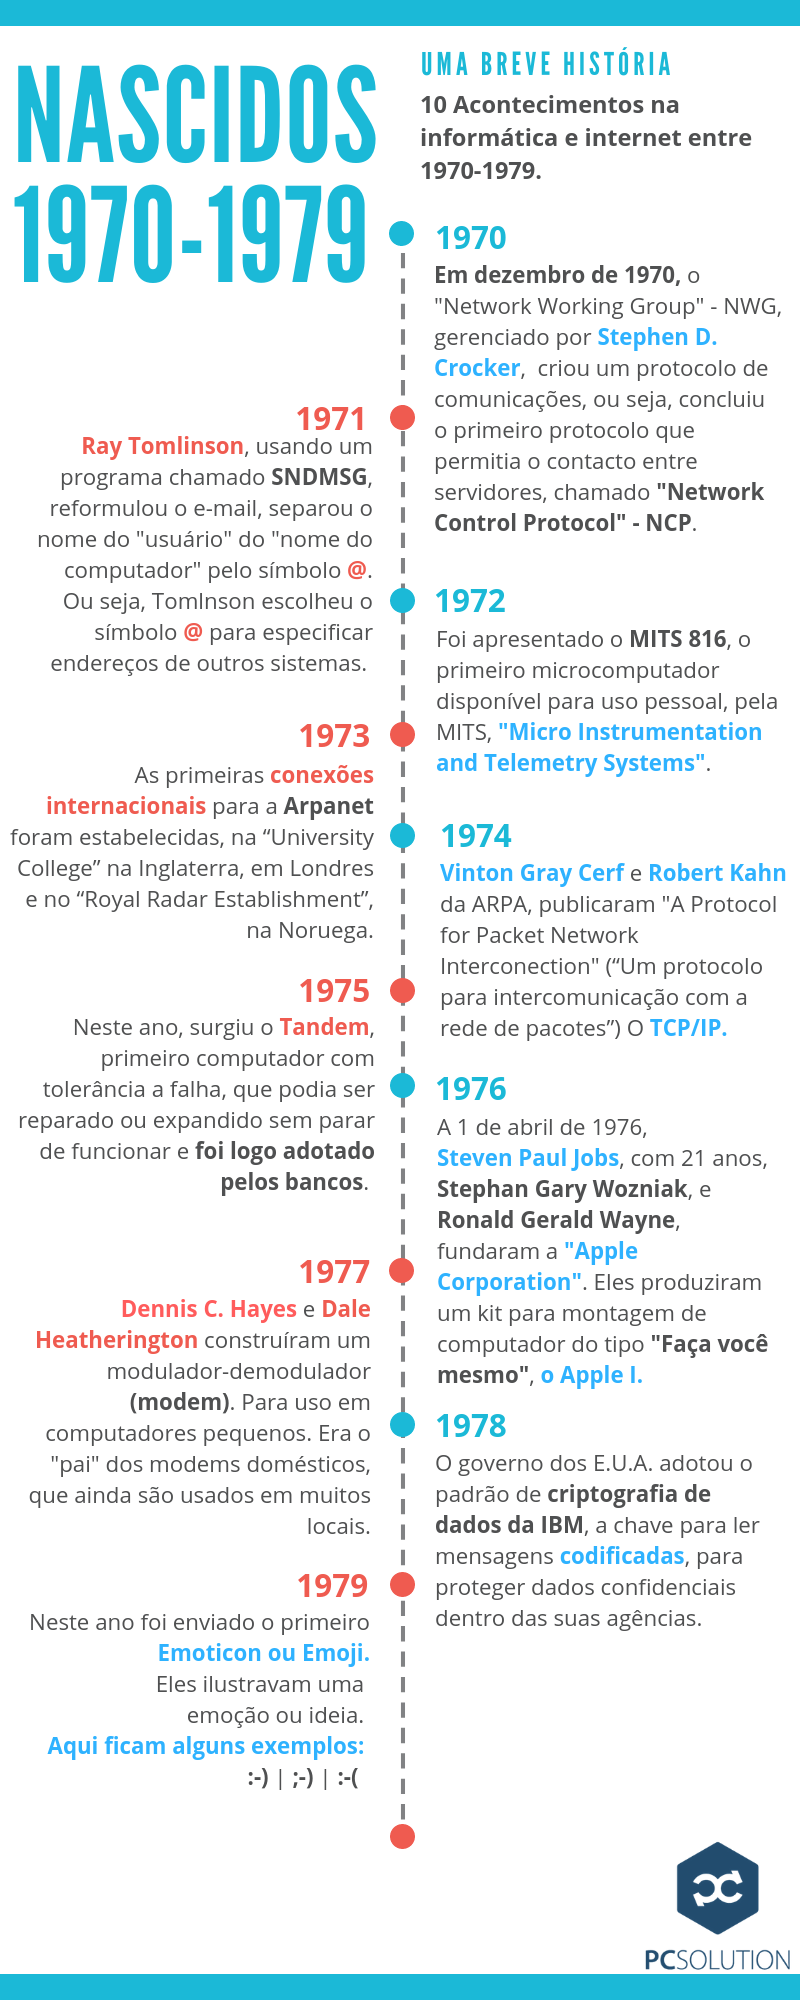 Acontecimentos na informática entre 1970-1979